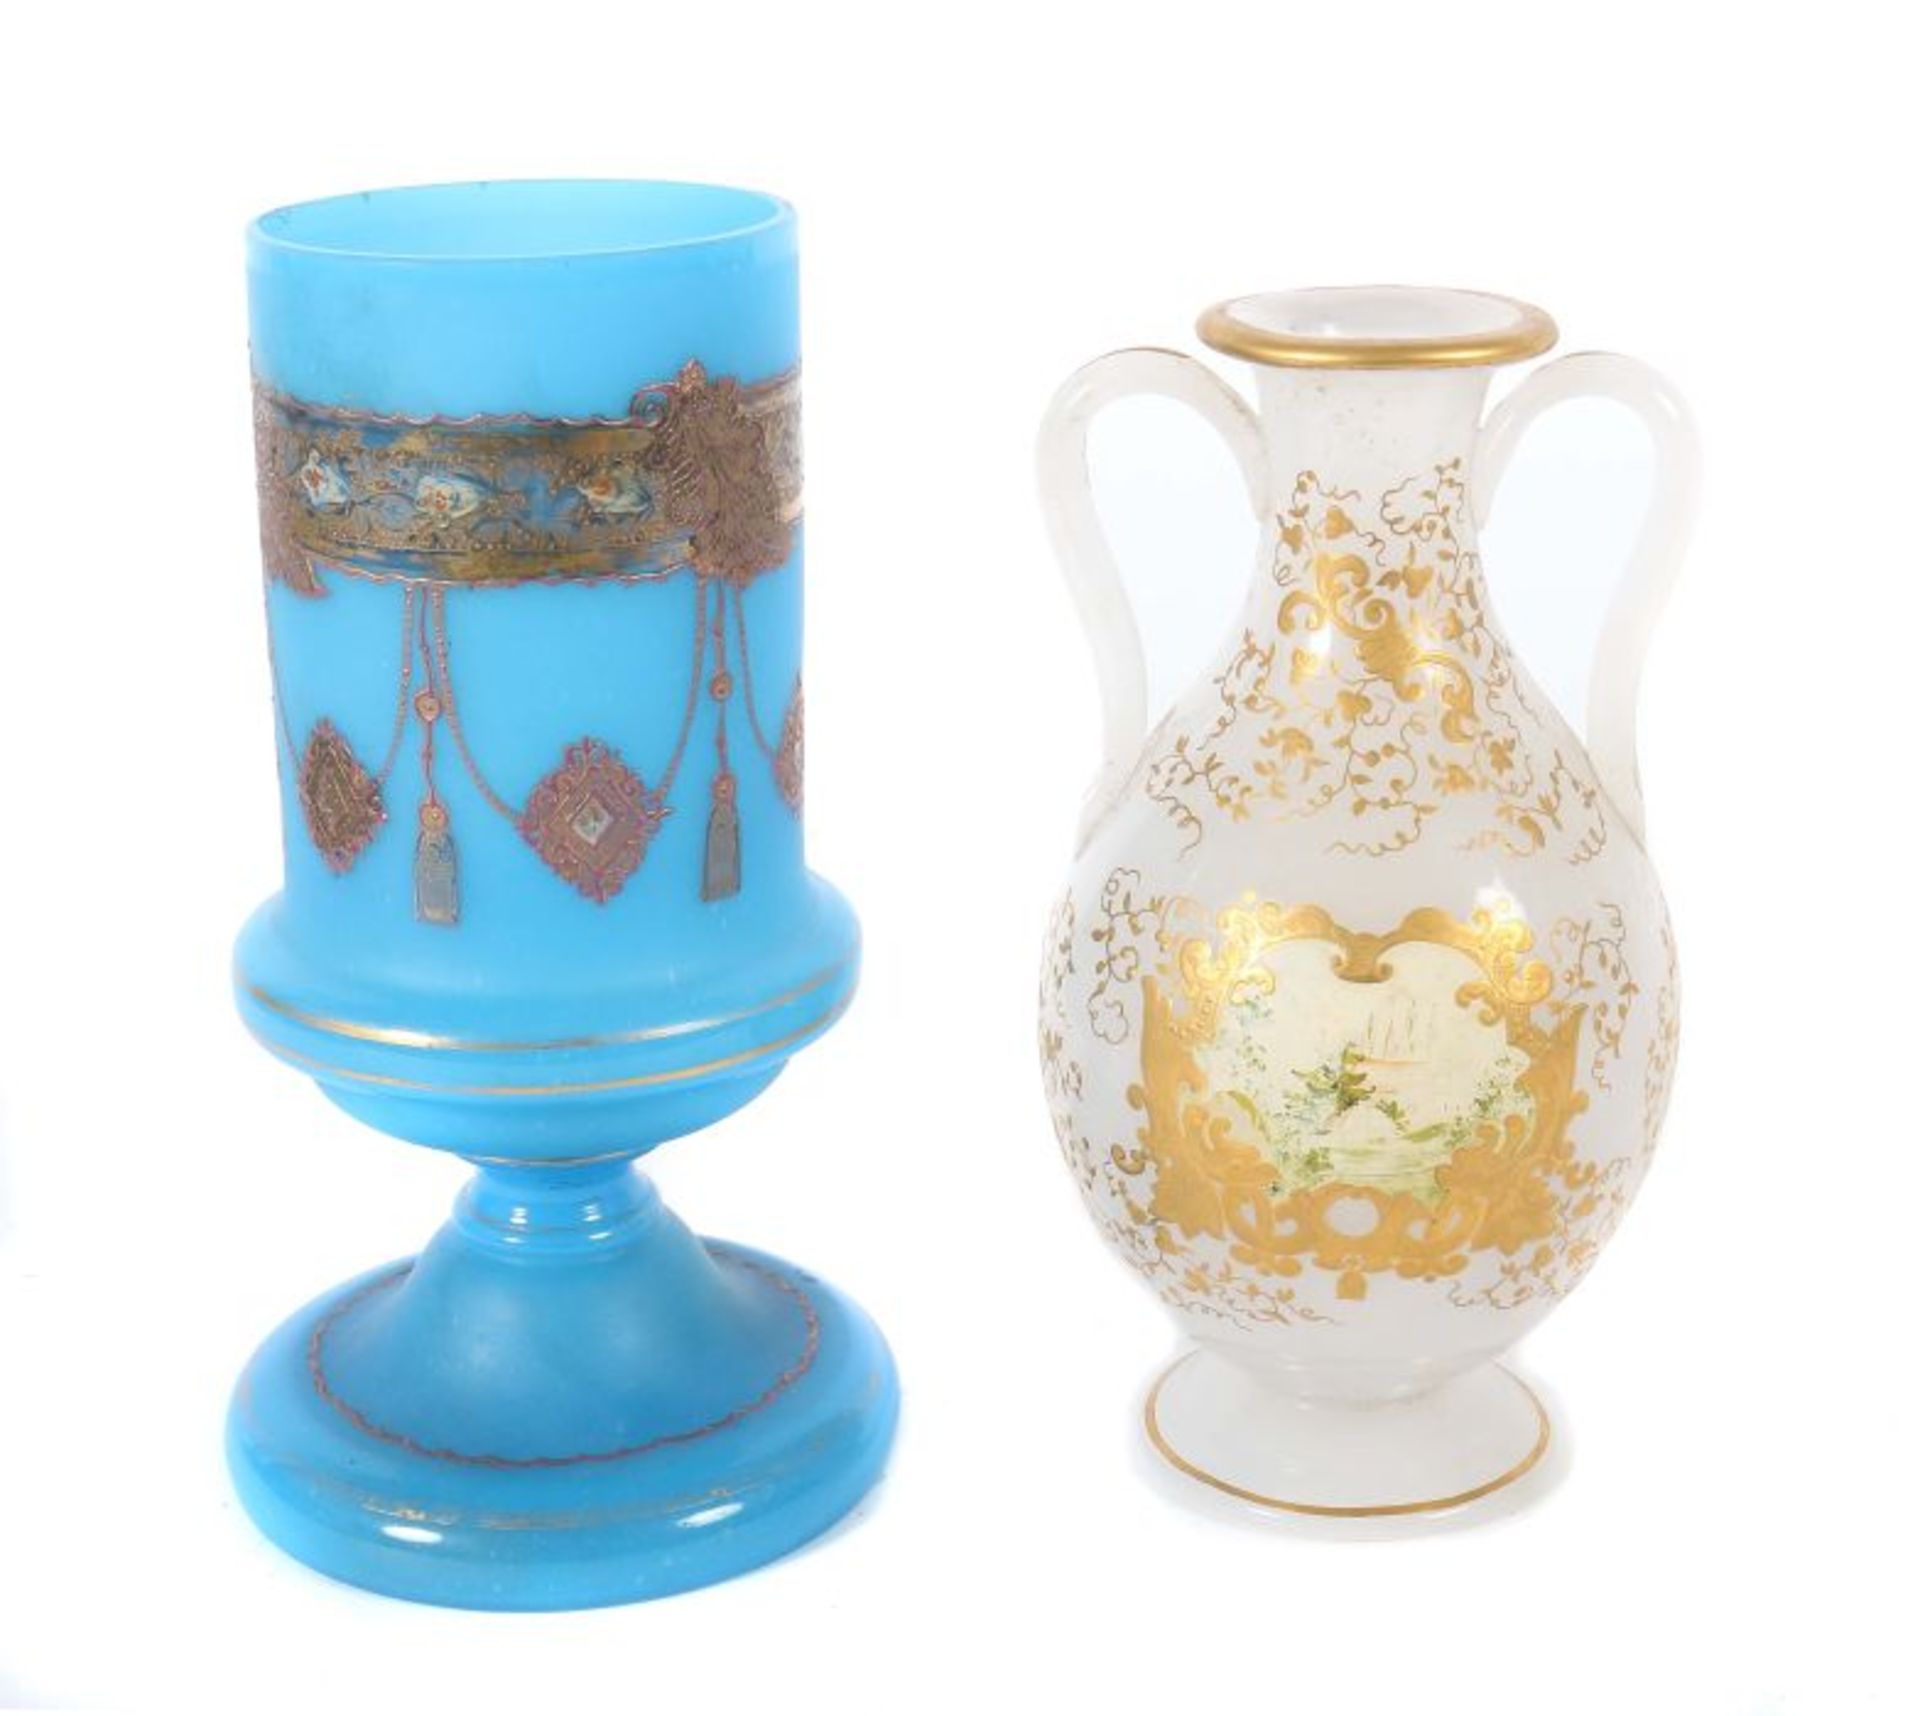 Zwei Vasen Böhmen, 19. Jh., best. aus Opalinglasvase, modelgeblasen, mit Emailfarben bemaltes Dekor; - Bild 2 aus 2